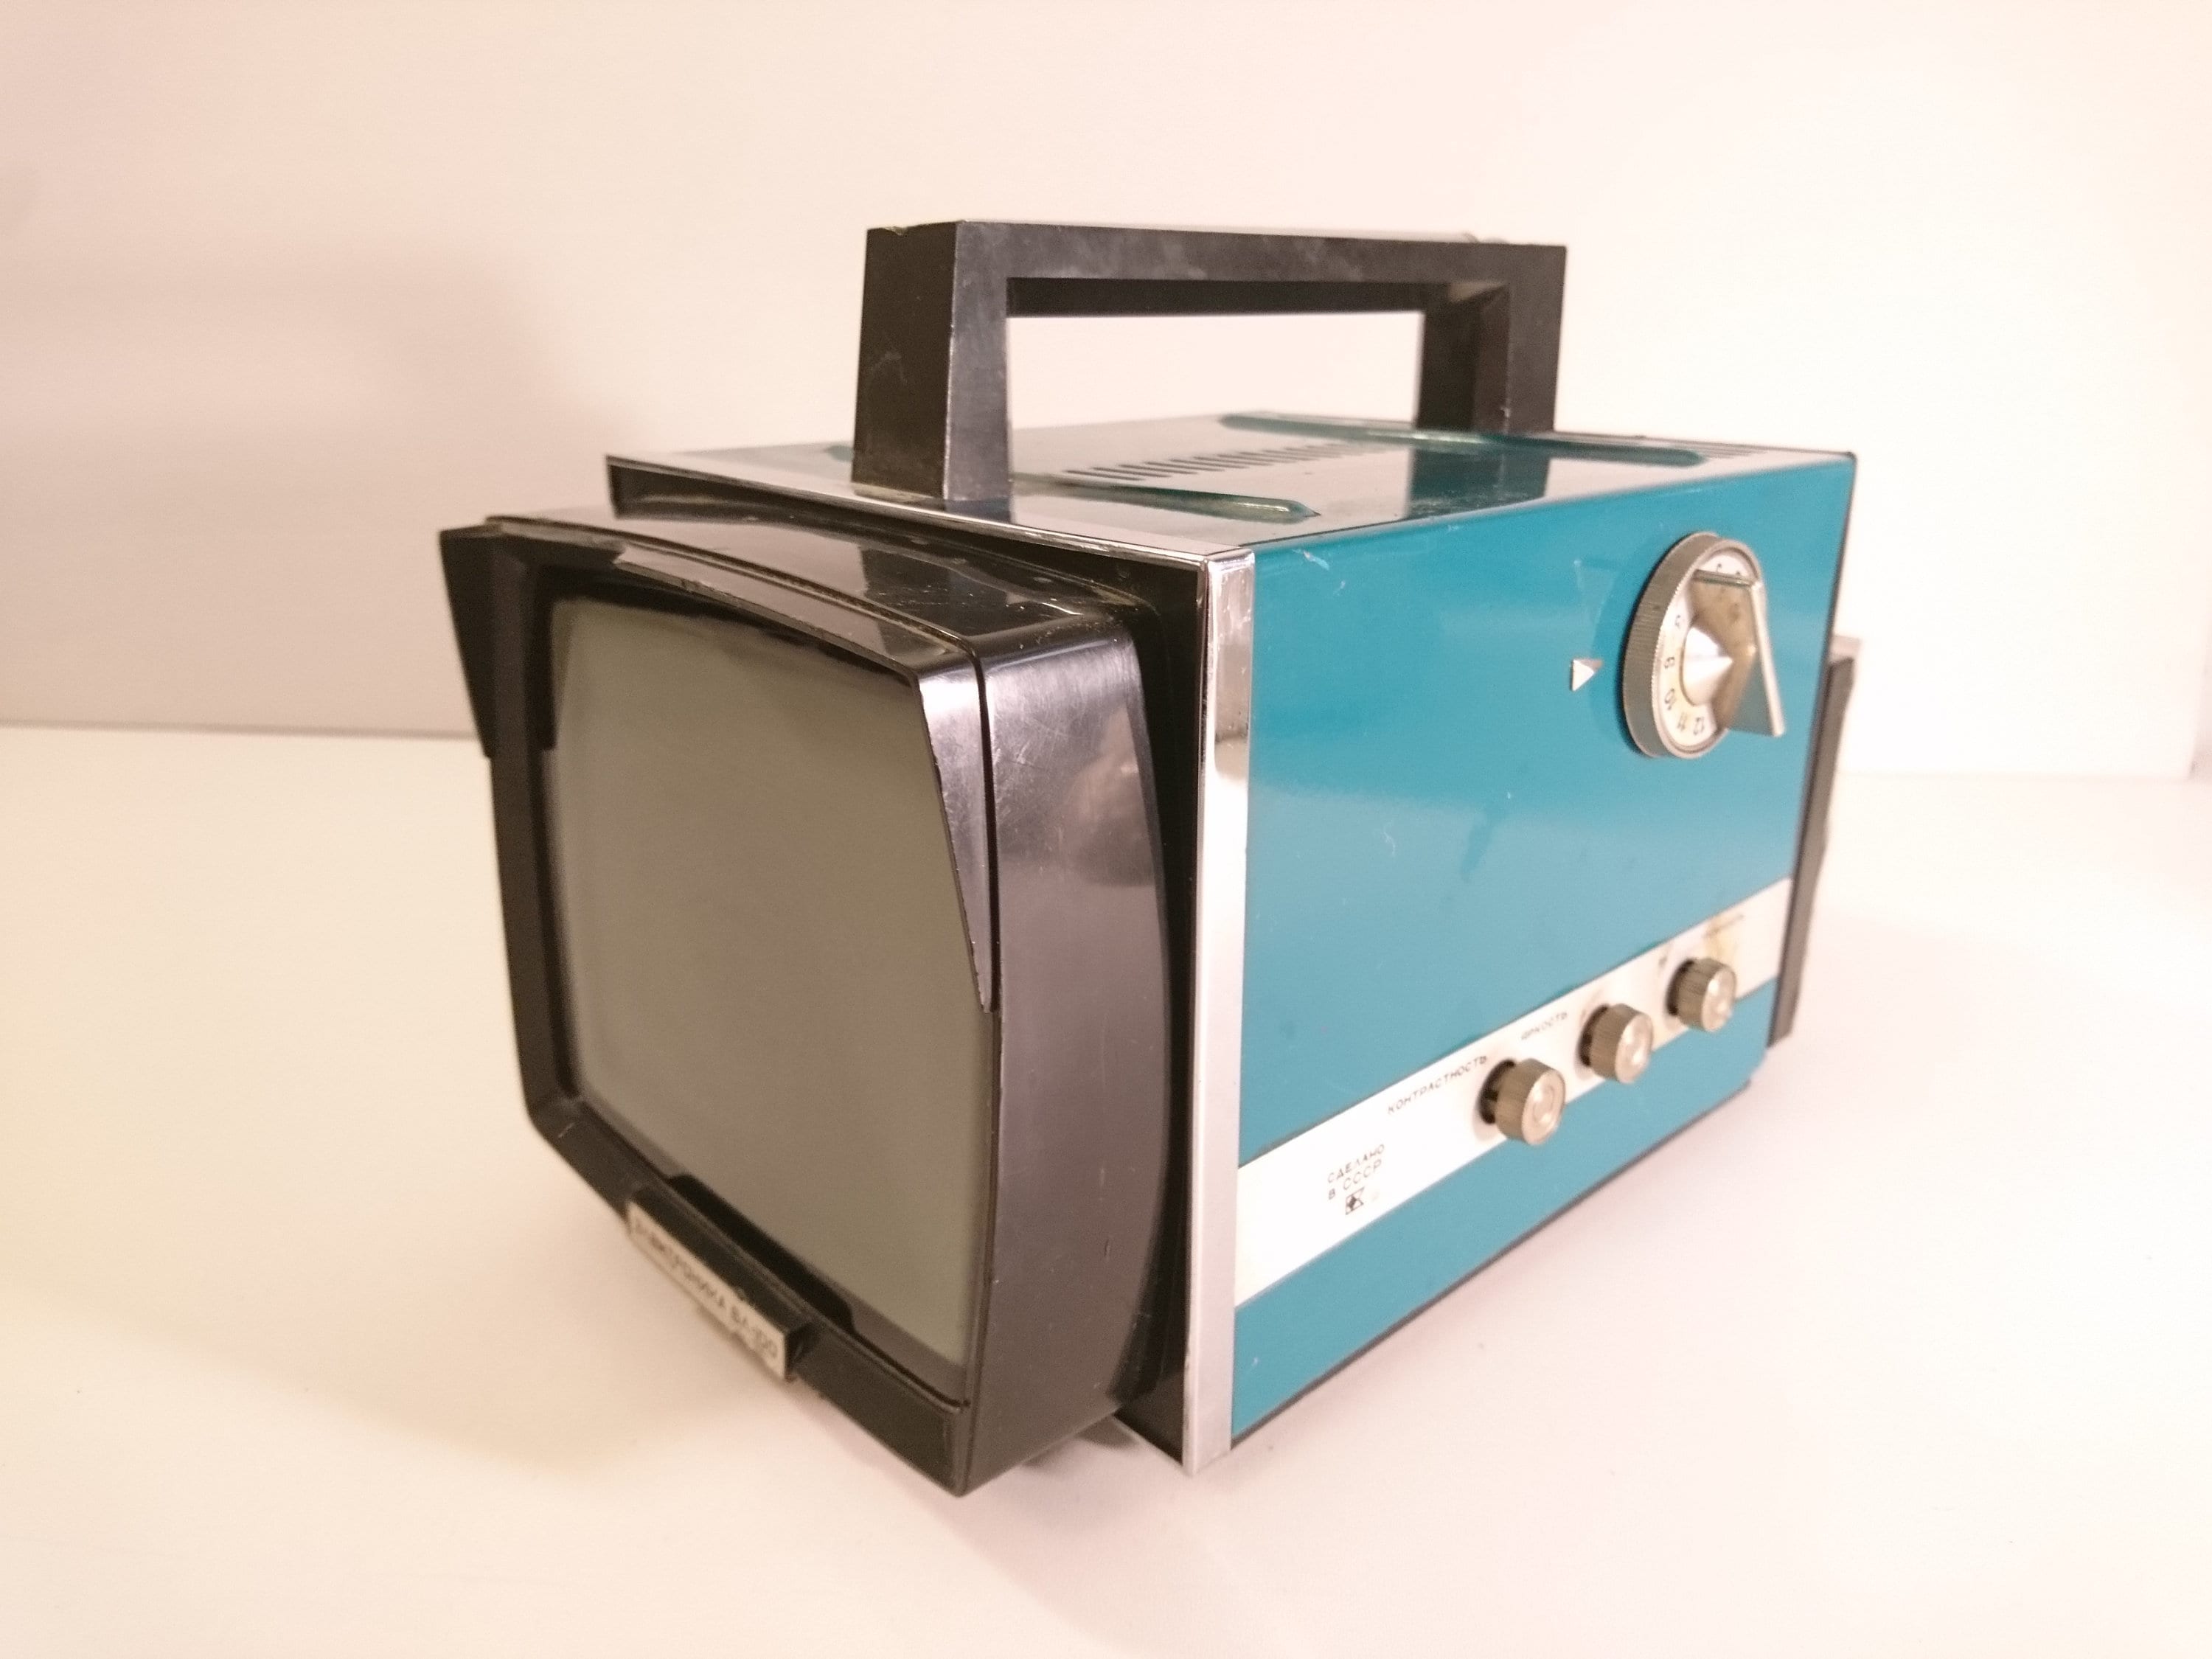 Mini televisor CRT en blanco y negro, Astra junior 2 televisión